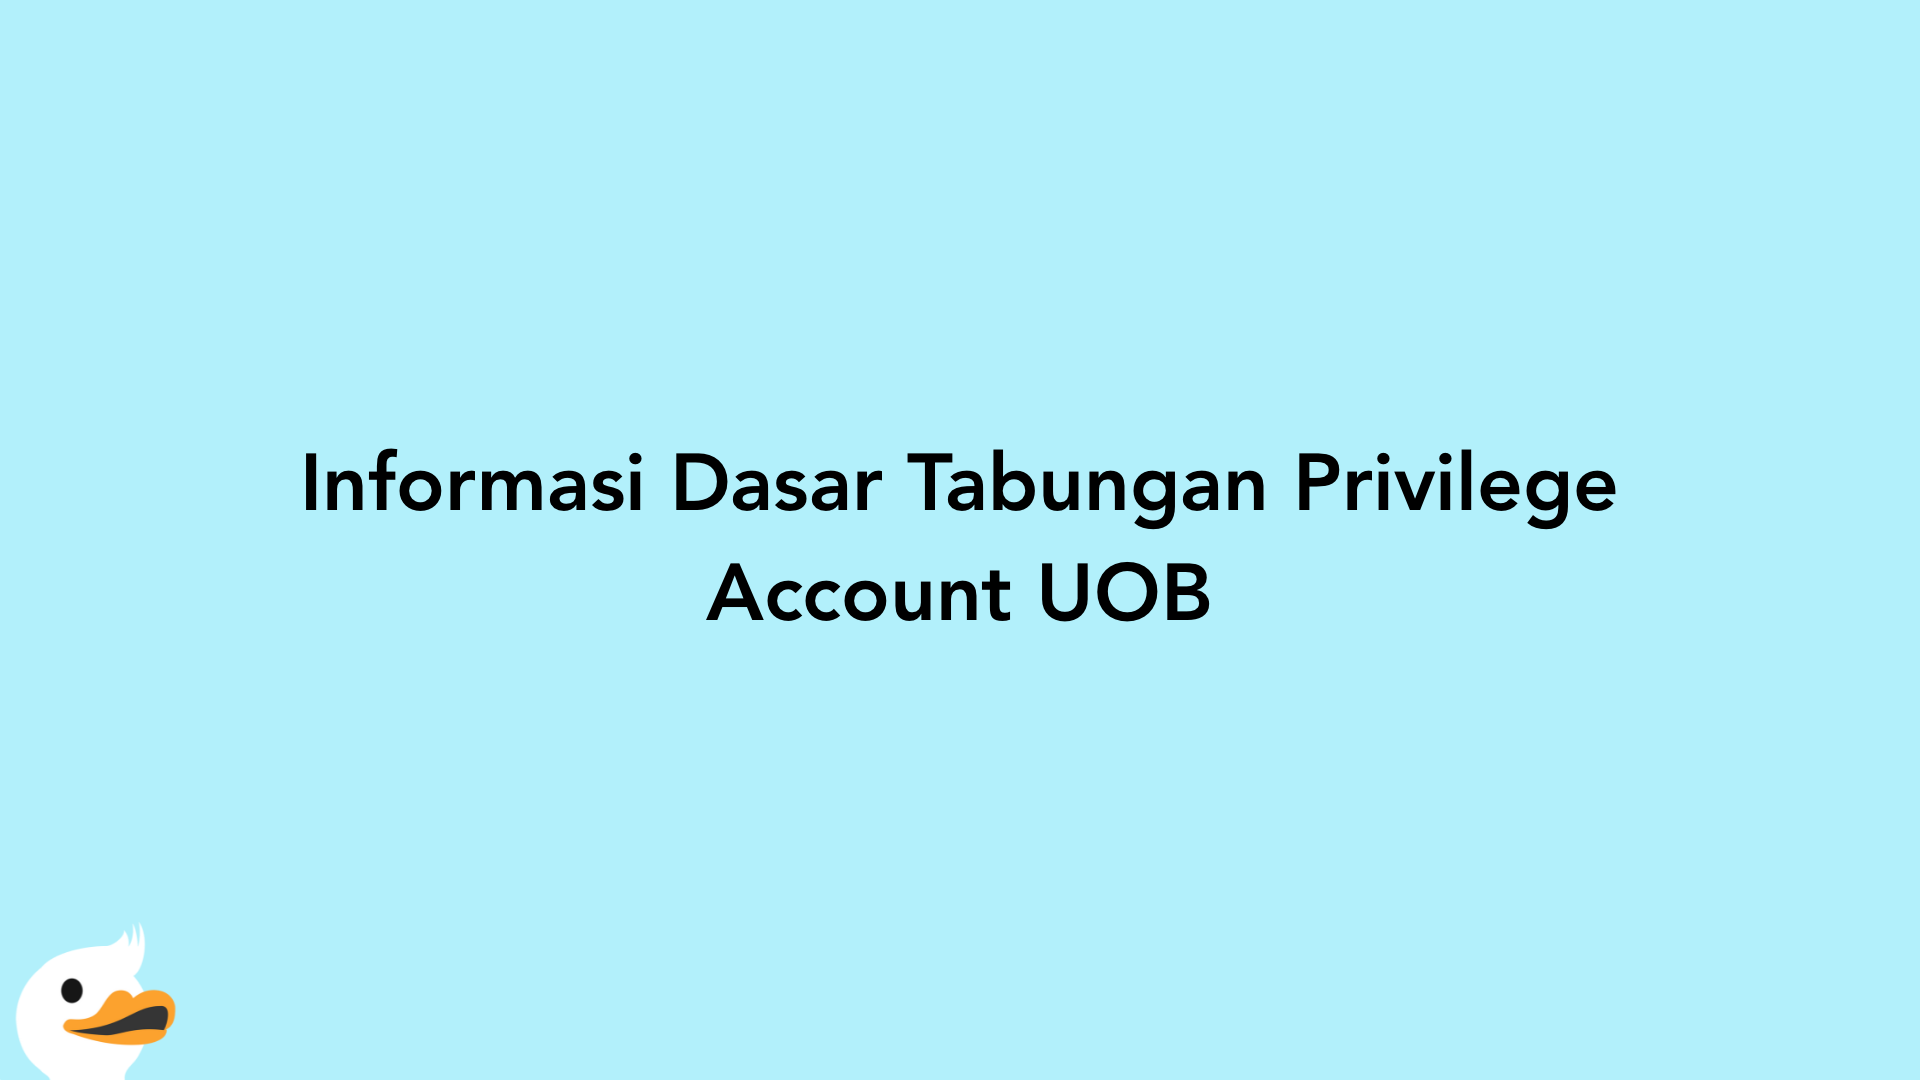 Informasi Dasar Tabungan Privilege Account UOB